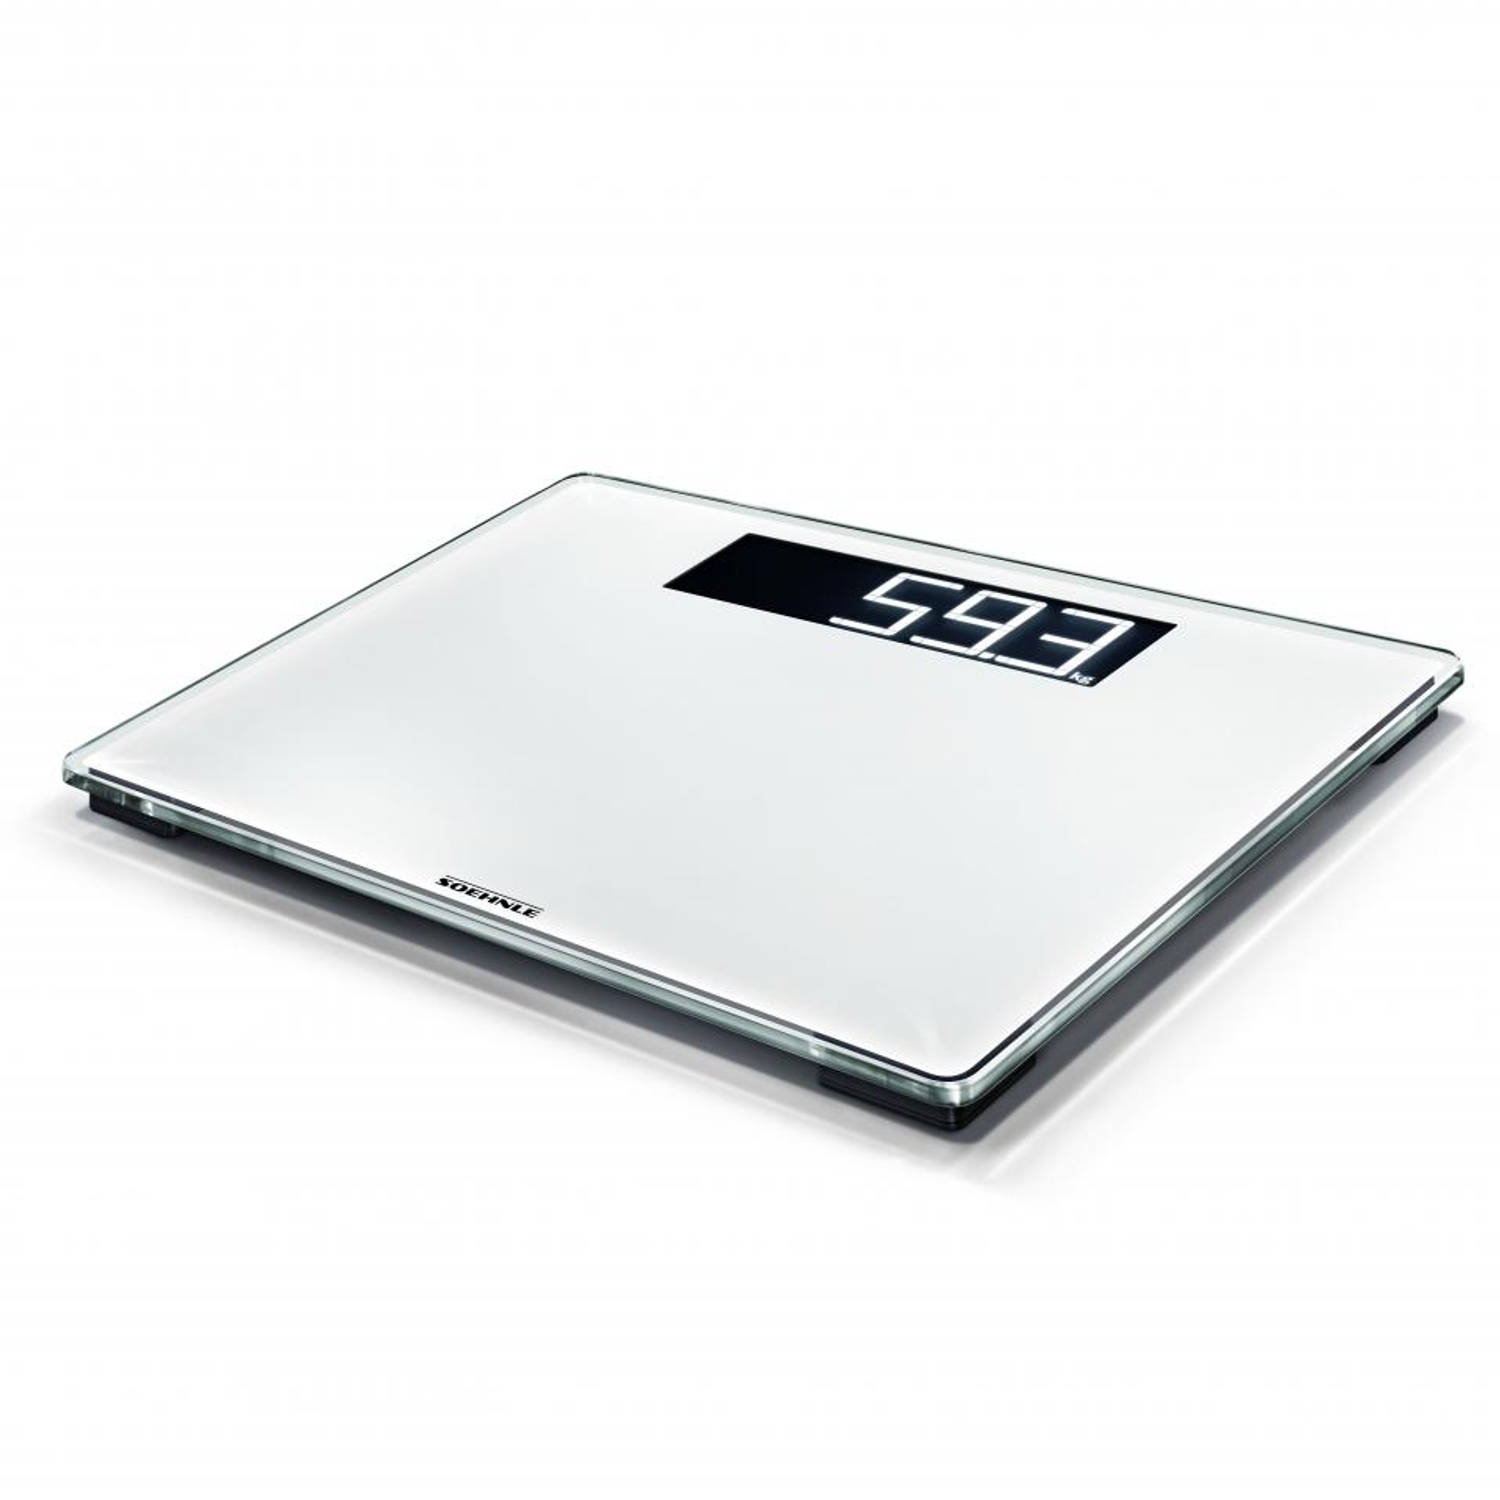 Soehnle - personenweegschaal - digitaal - XL (35 x 30) - glas - wit - weeghistorie - streefgewicht - BMI - doorweegfunctie  tot 200 KG